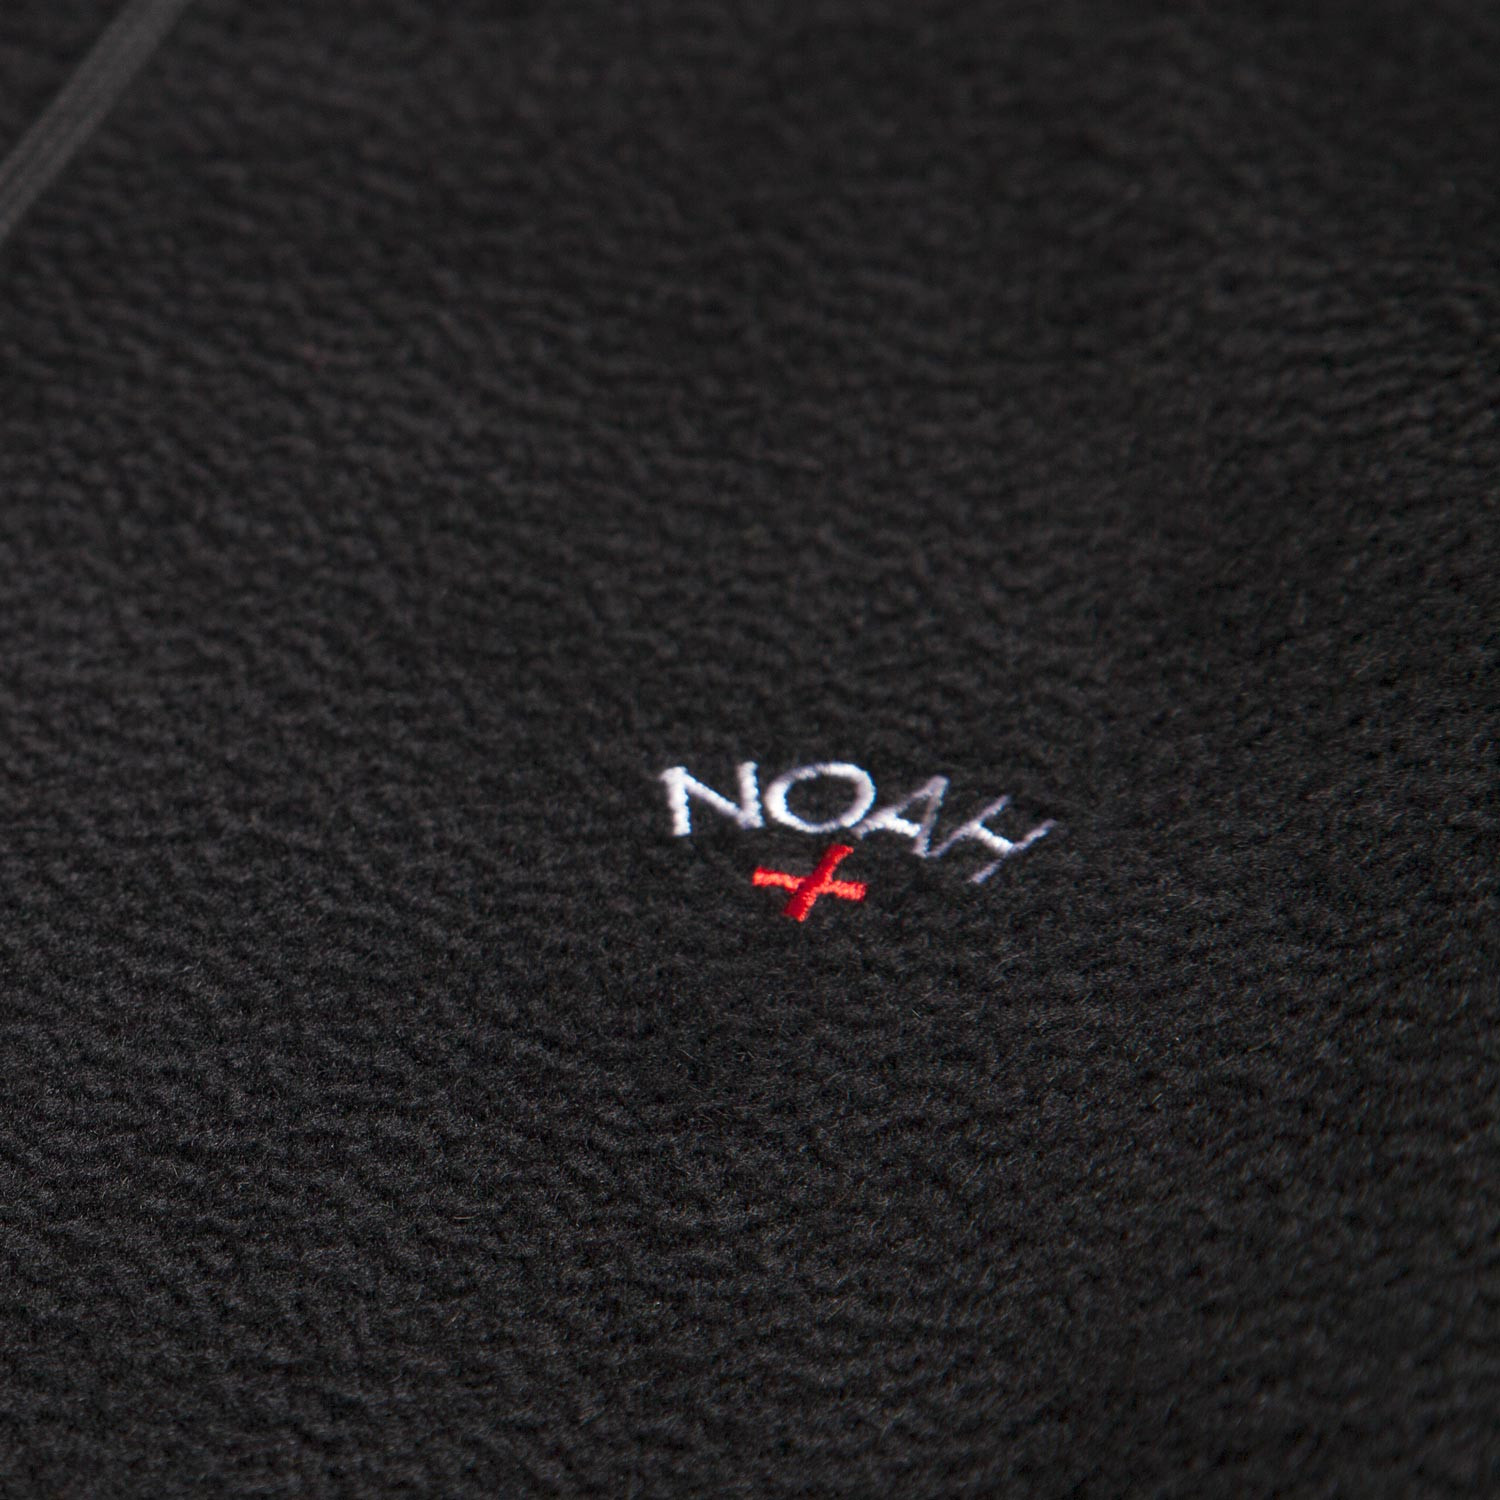 noah hoodie detail.jpg